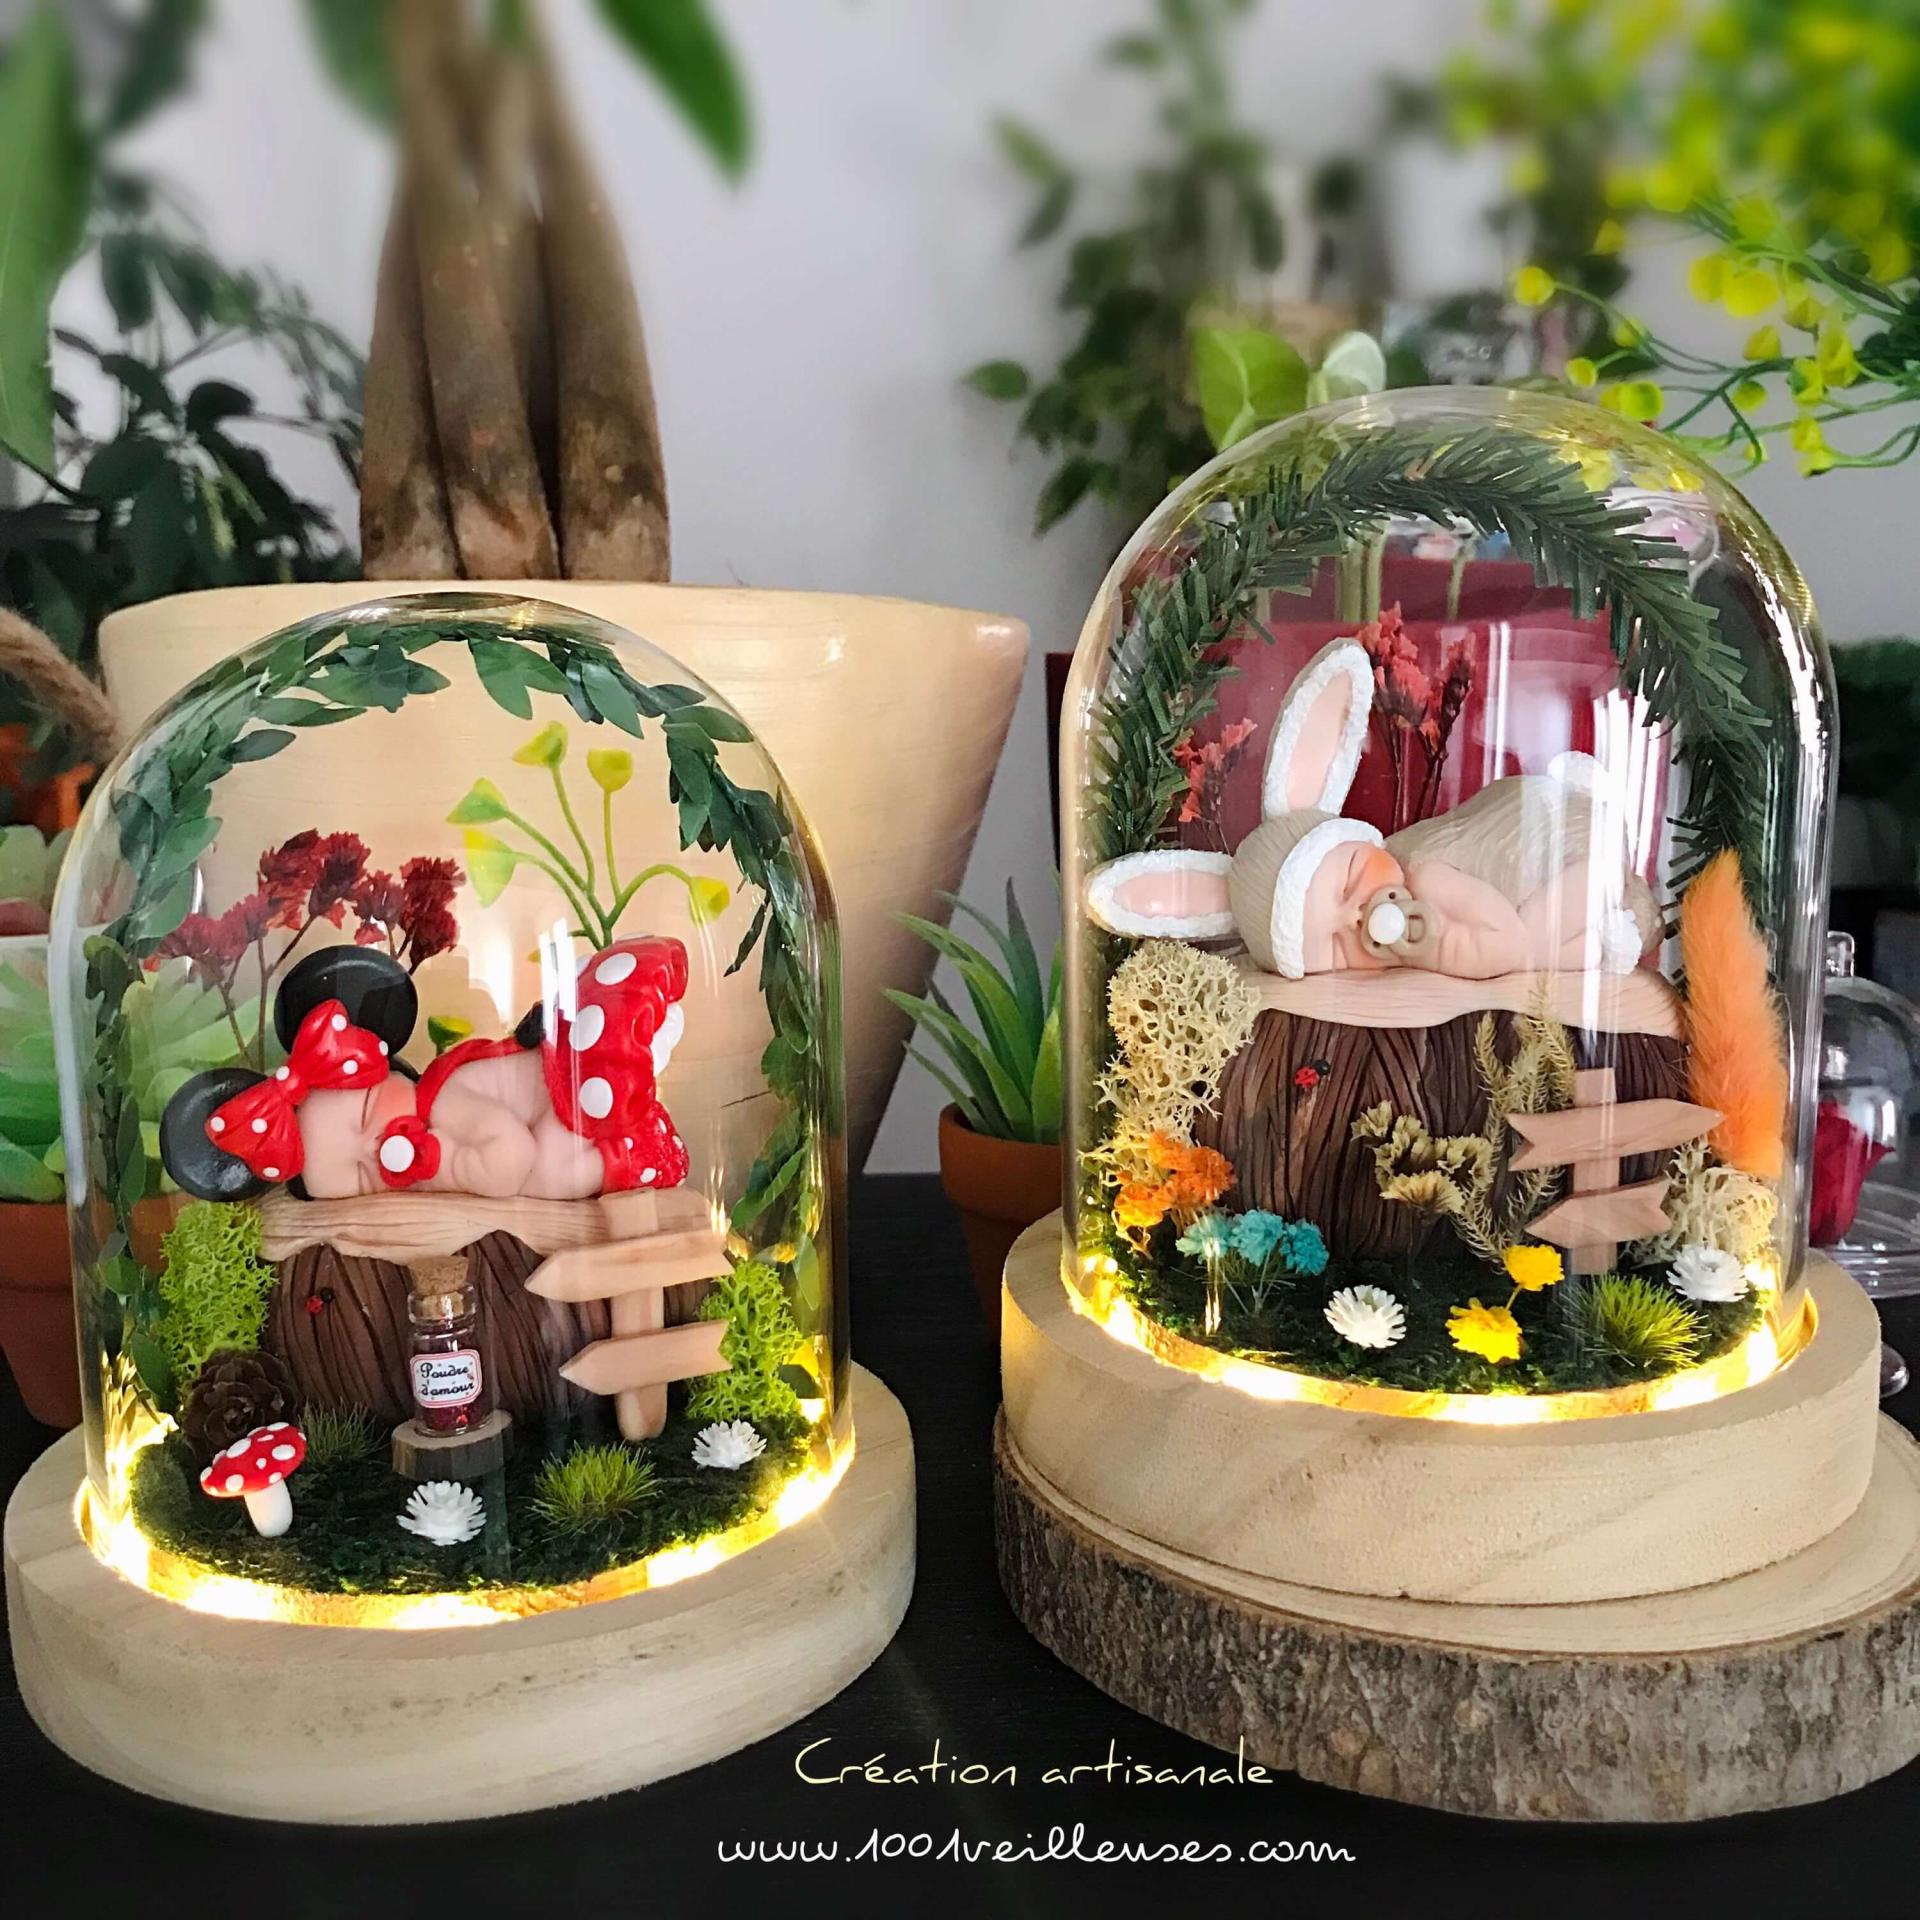 Magnifiques veilleuses personnalisées allumées dans un décor de rêve miniature thème Minnie et thème Lapin, travail artisanal